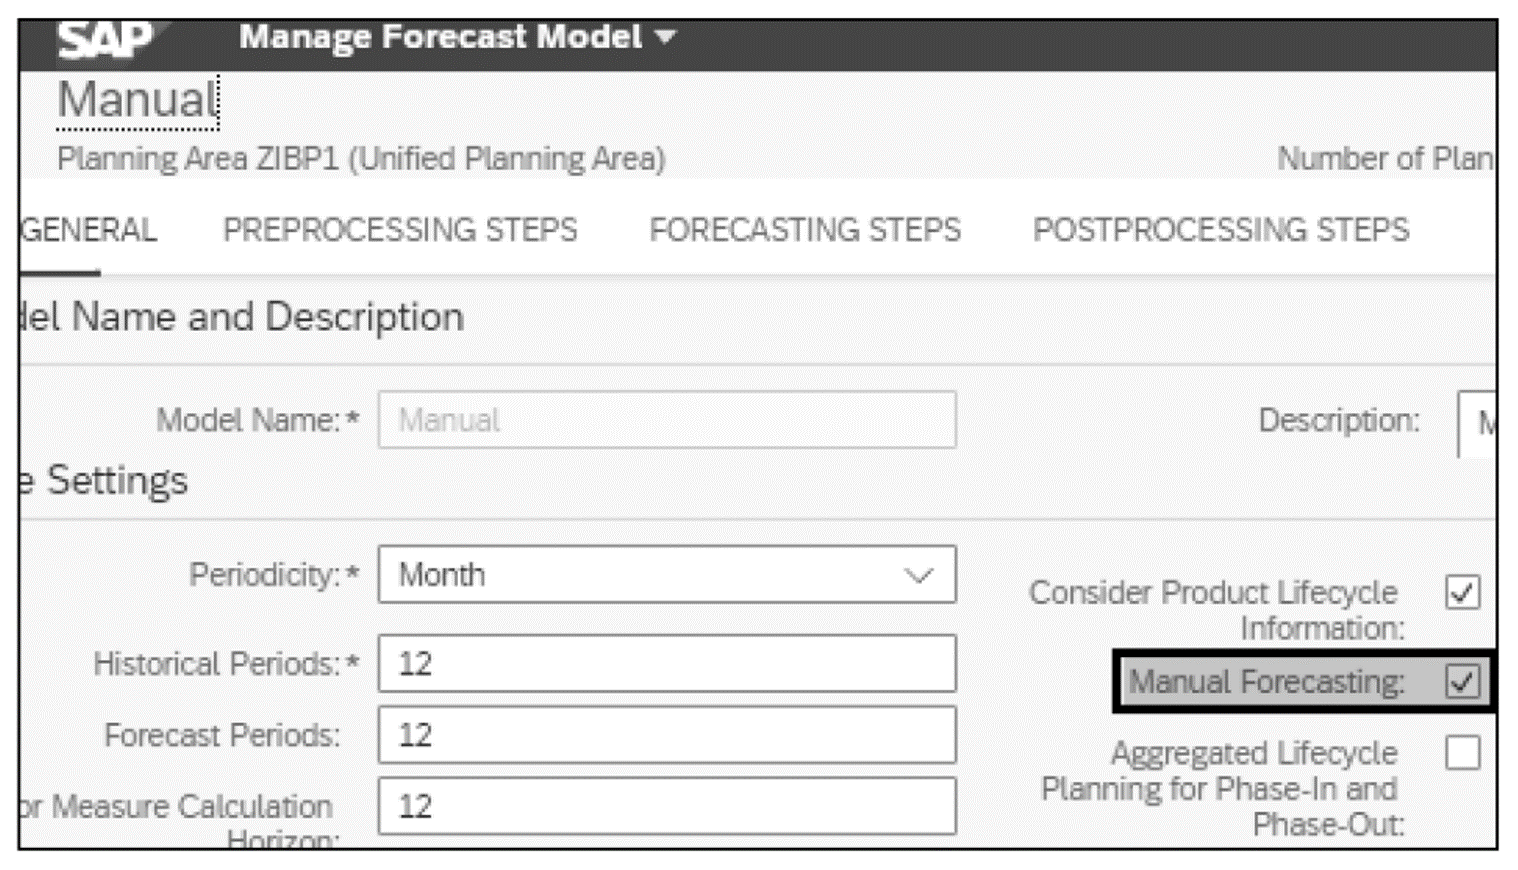 Administrar modelo de pronóstico: Opción de pronóstico manual